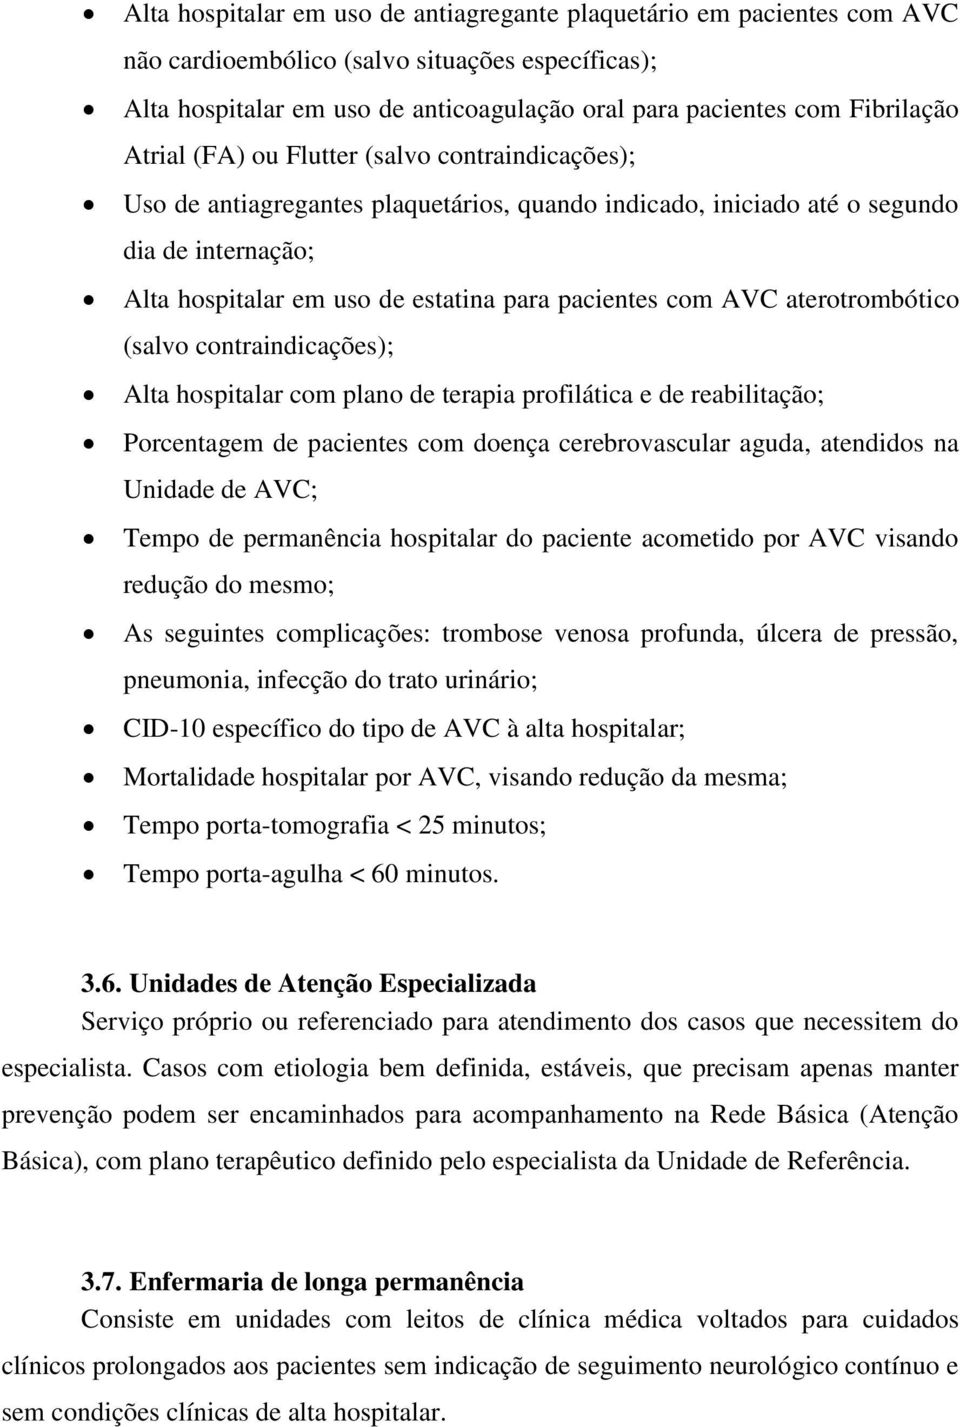 AVC aterotrombótico (salvo contraindicações); Alta hospitalar com plano de terapia profilática e de reabilitação; Porcentagem de pacientes com doença cerebrovascular aguda, atendidos na Unidade de